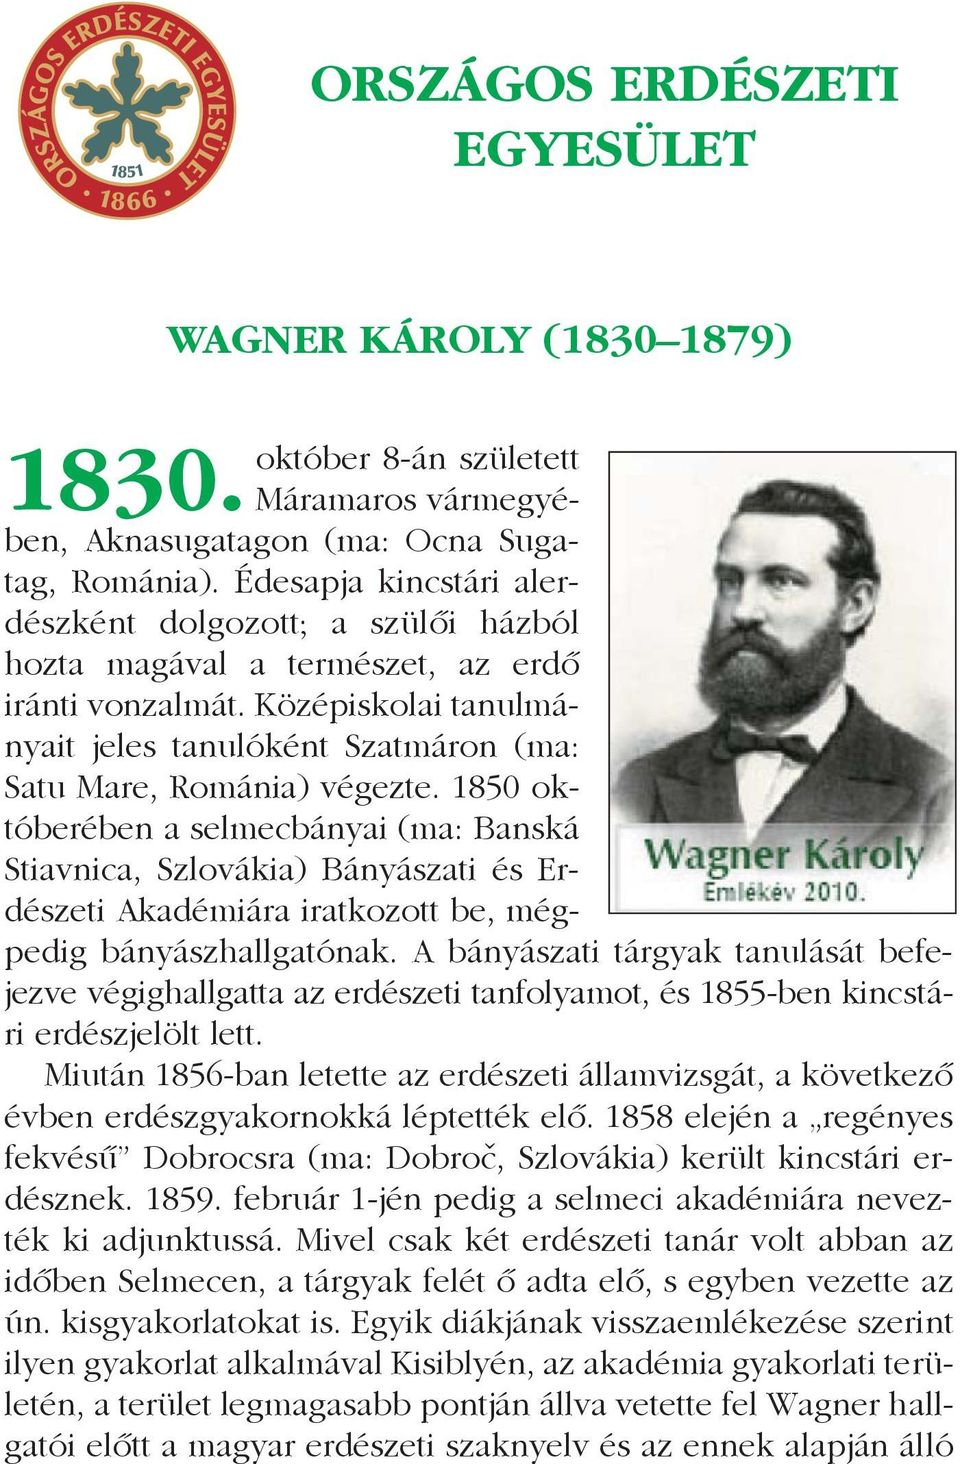 1850 októberében a selmecbányai (ma: Banská Stiavnica, Szlovákia) Bányászati és Erdészeti Akadémiára iratkozott be, mégpedig bányászhallgatónak.